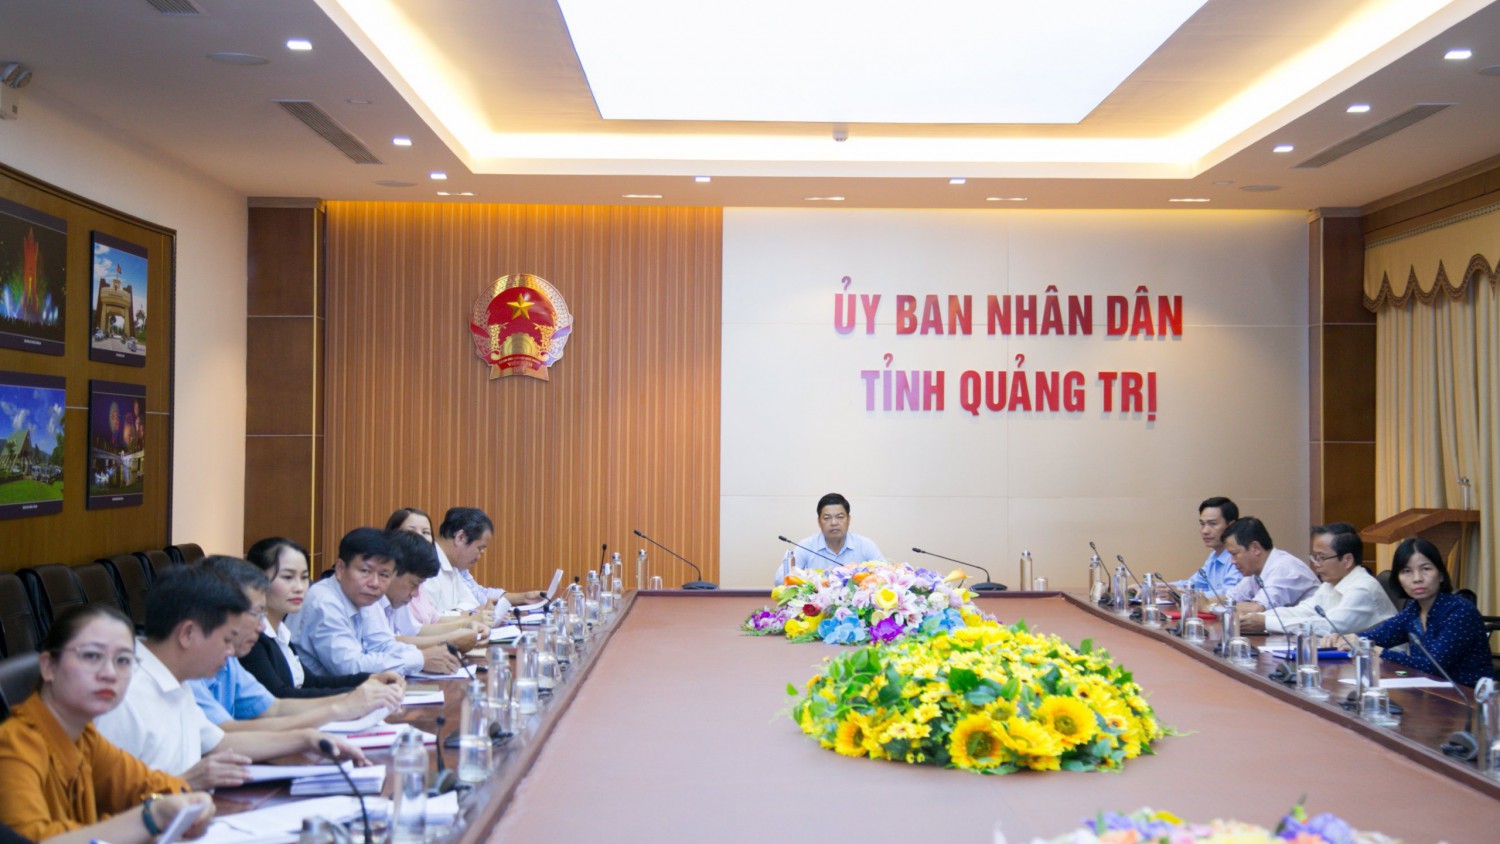 Toàn cảnh hội nghị tại điểm cầu tỉnh Quảng Trị